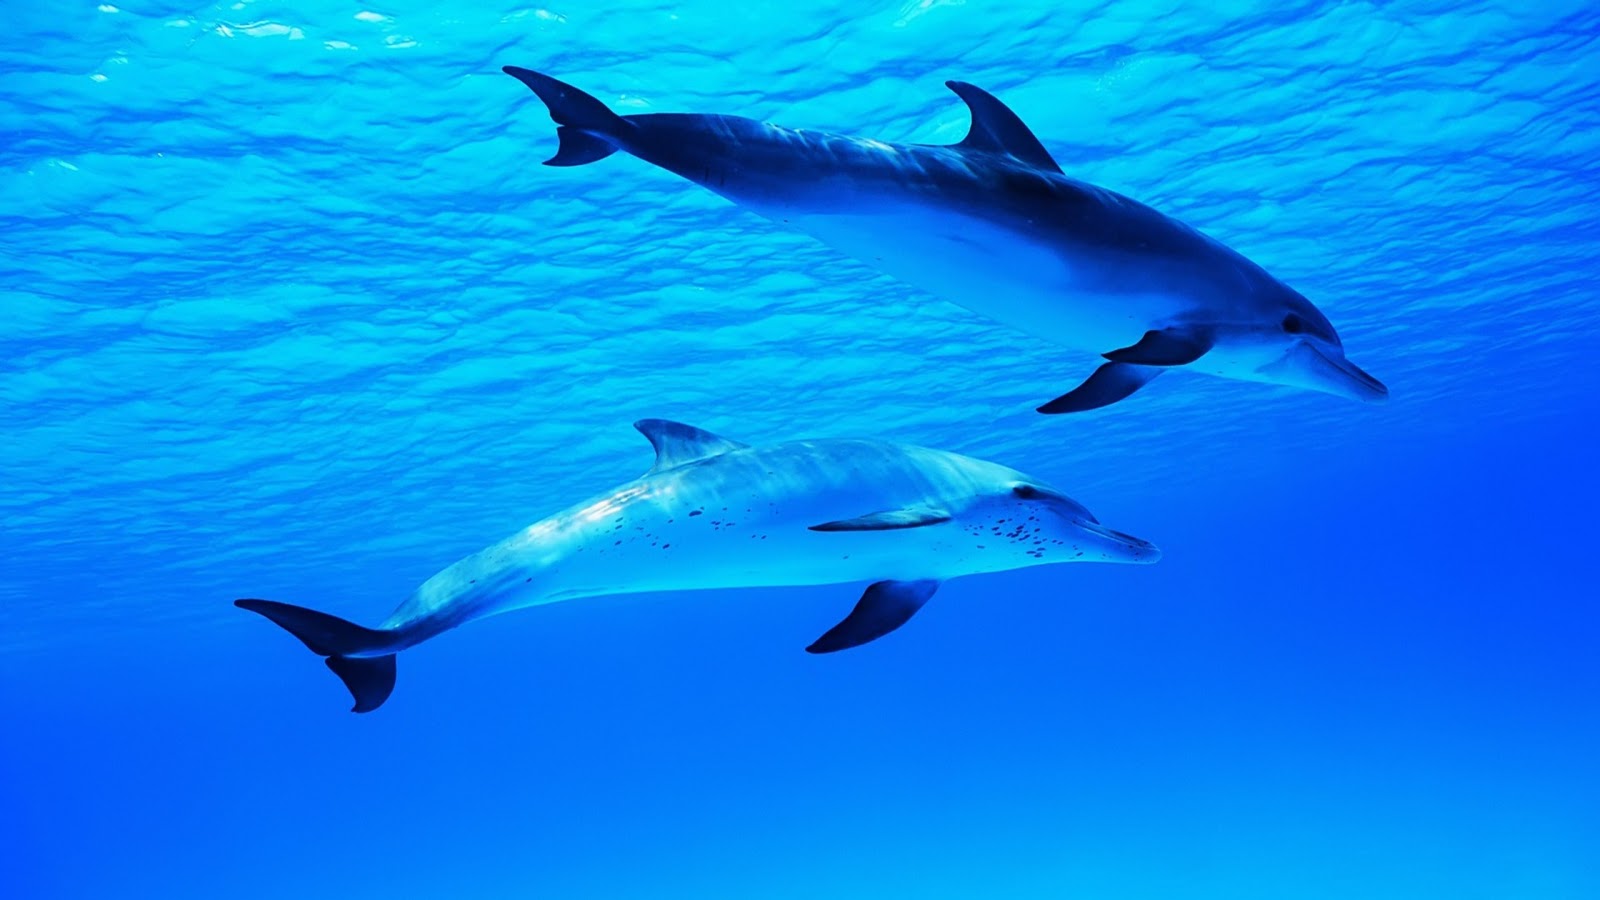 Cá heo: Hãy chiêm ngưỡng vẻ đẹp của những chú cá heo nhảy múa thật sự đầy mê hoặc trong lòng đại dương. Chúng có thể mang lại cho bạn một bầu không khí lãng mạn và tình yêu đầy muôn màu phiêu lãng. Hãy click ngay để xem những hình ảnh đầy thần kinh này.